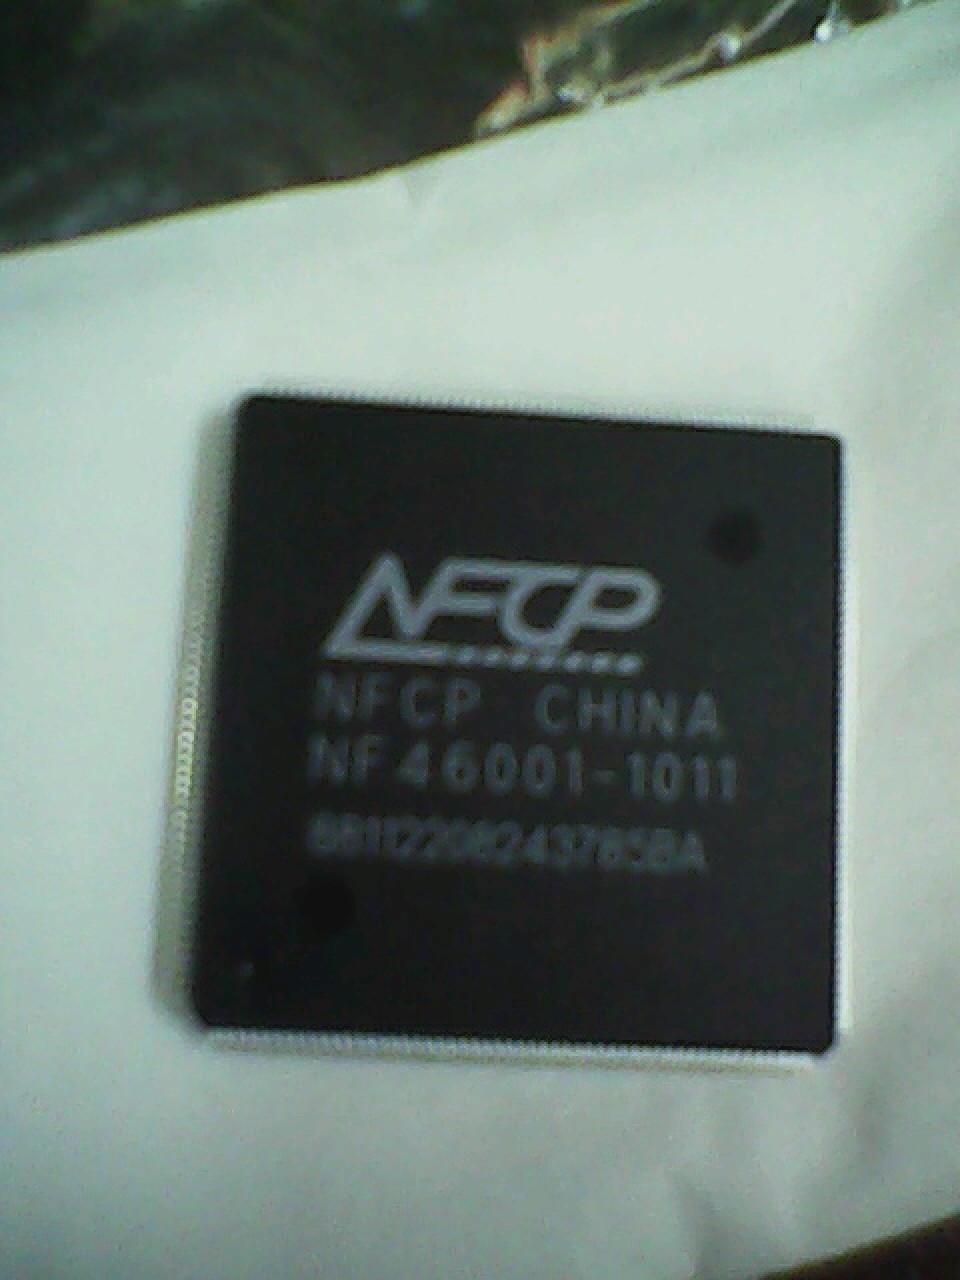 全新原装 NF46001-1011 富士通DPK750 760 770 800 810主芯片